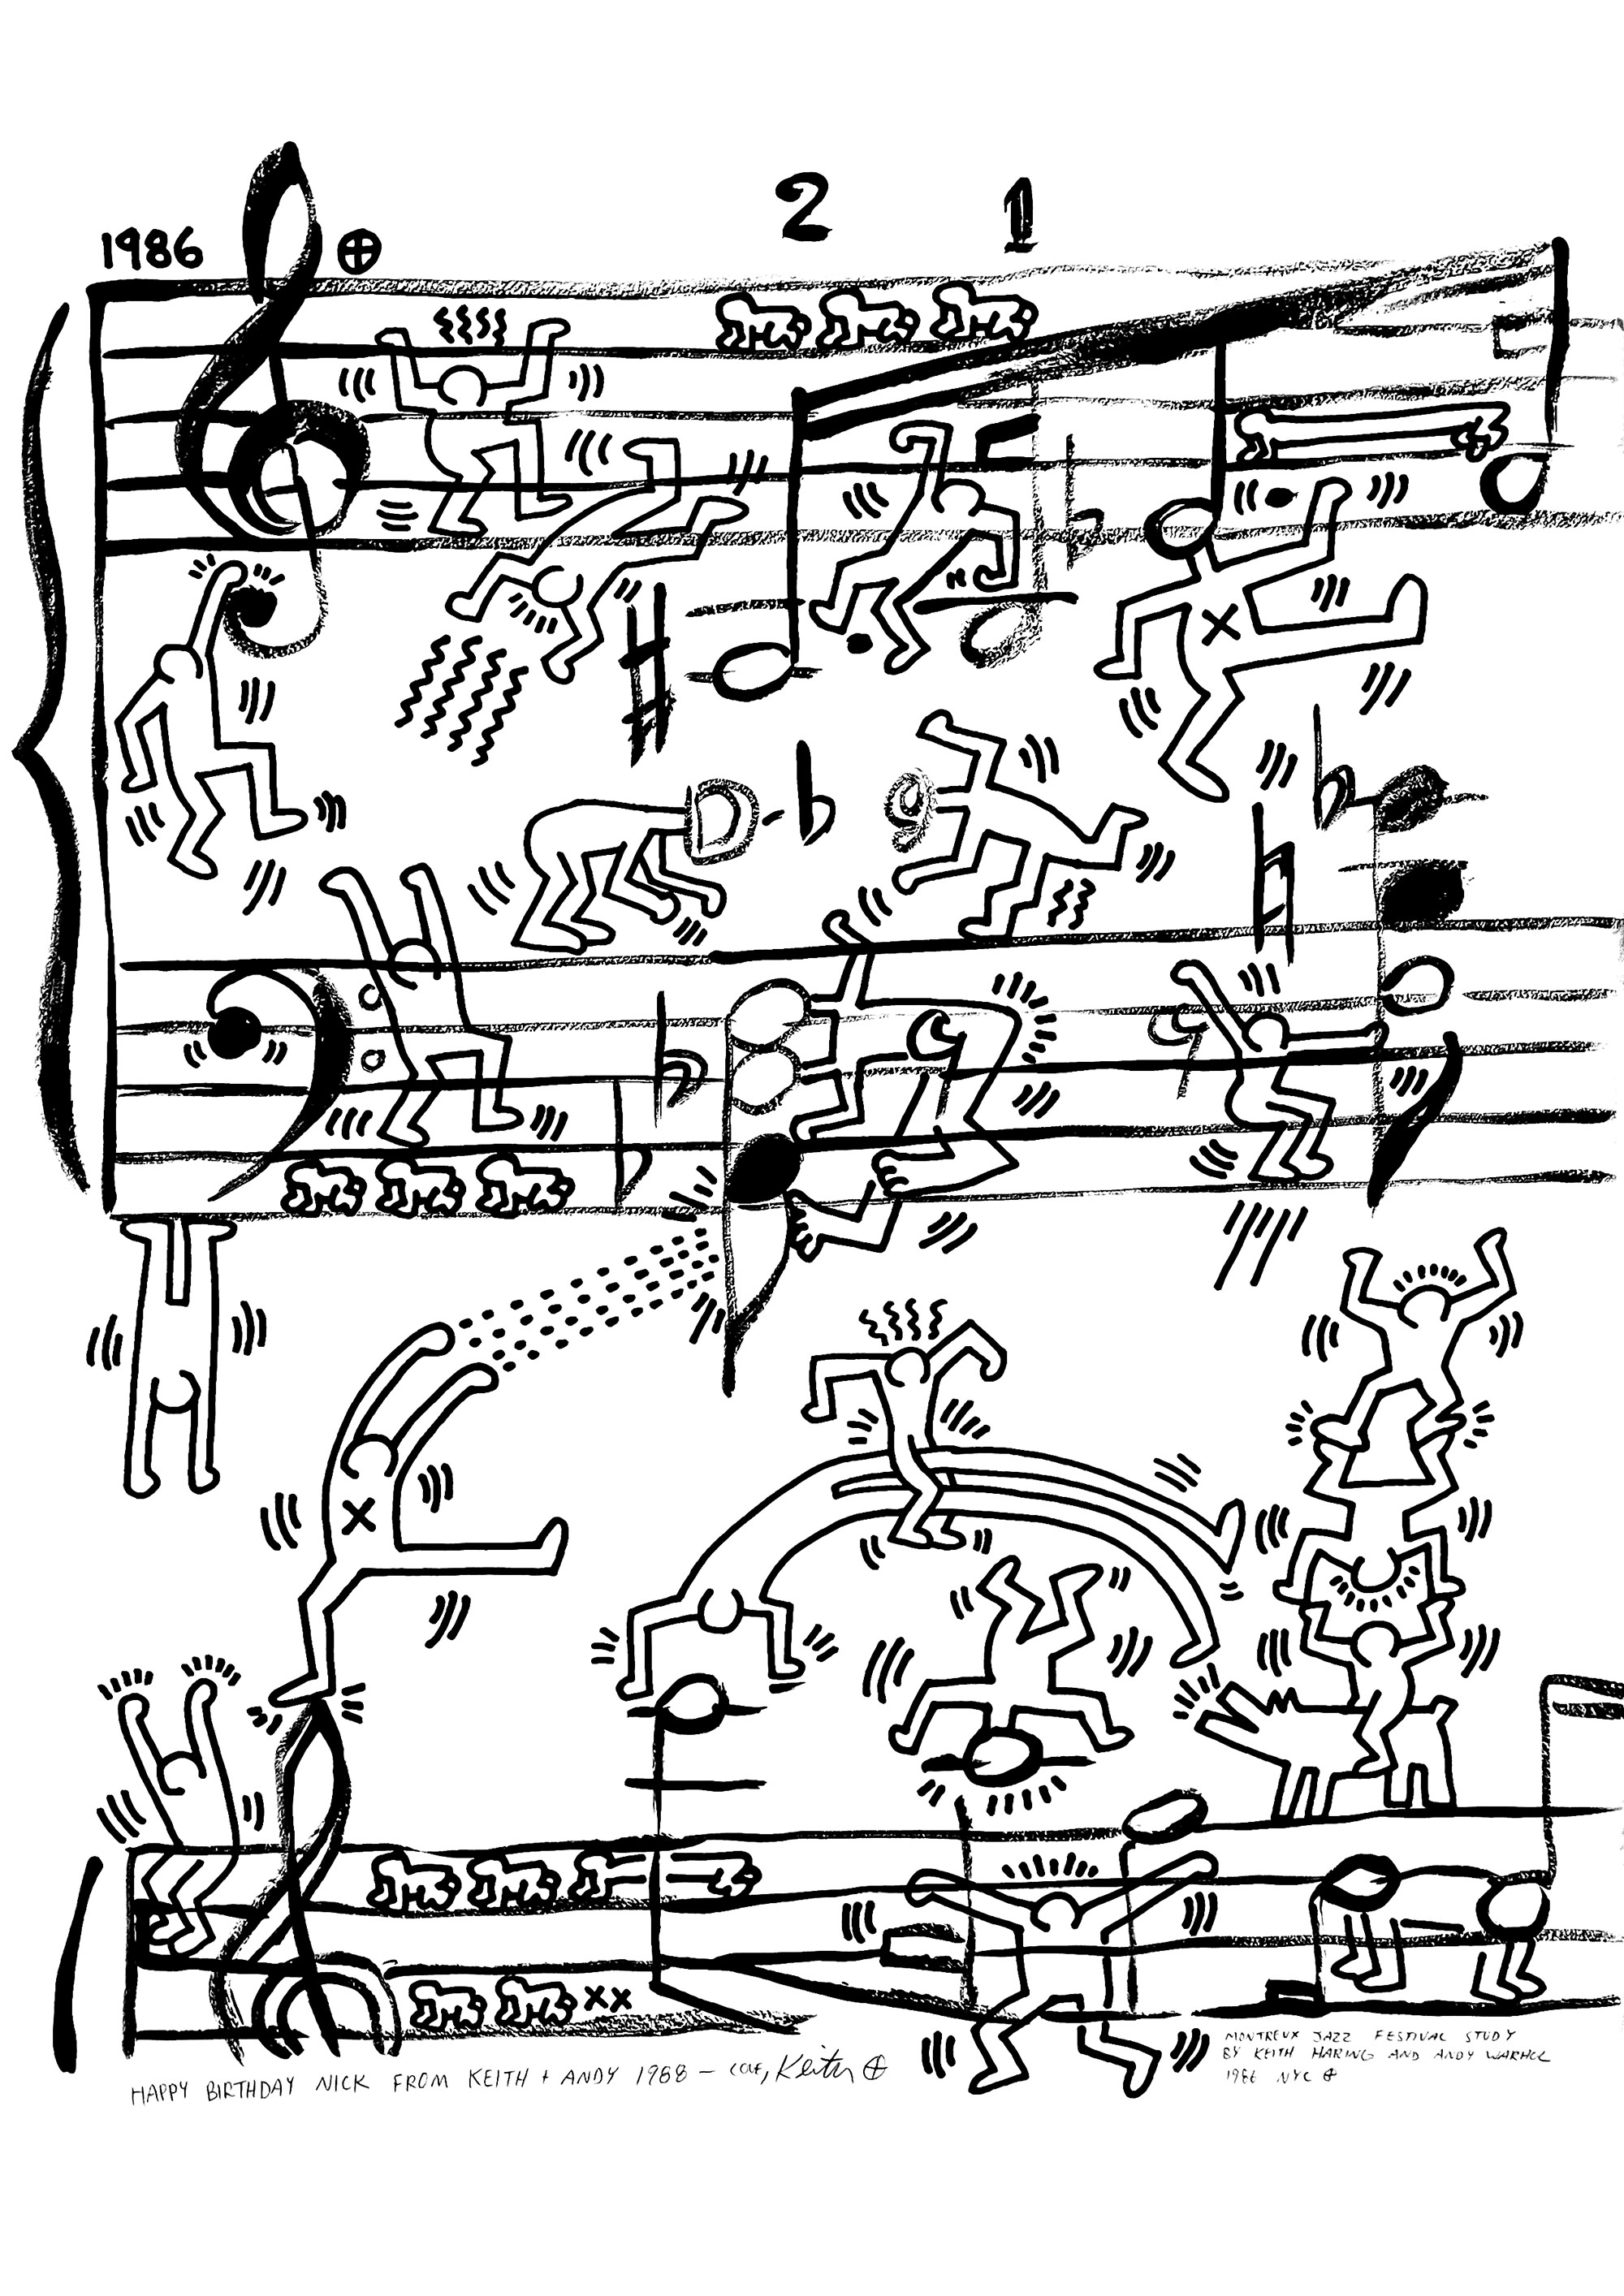 Plakatprojekt für das Montreux Jazz Festival von Andy Warhol und Keith Haring, 1986. Die Freundschaft zwischen Keith Haring und Andy Warhol hat sein Werk tiefgreifend beeinflusst. Nach ihrer ersten Begegnung in der Tony Shafrazi Gallery im Jahr 1984 führte Keith Haring Andy Warhol in die kreative Szene Manhattans ein, ein Umfeld, das den Gründervater der Pop Art während seiner gesamten Karriere inspirierte.